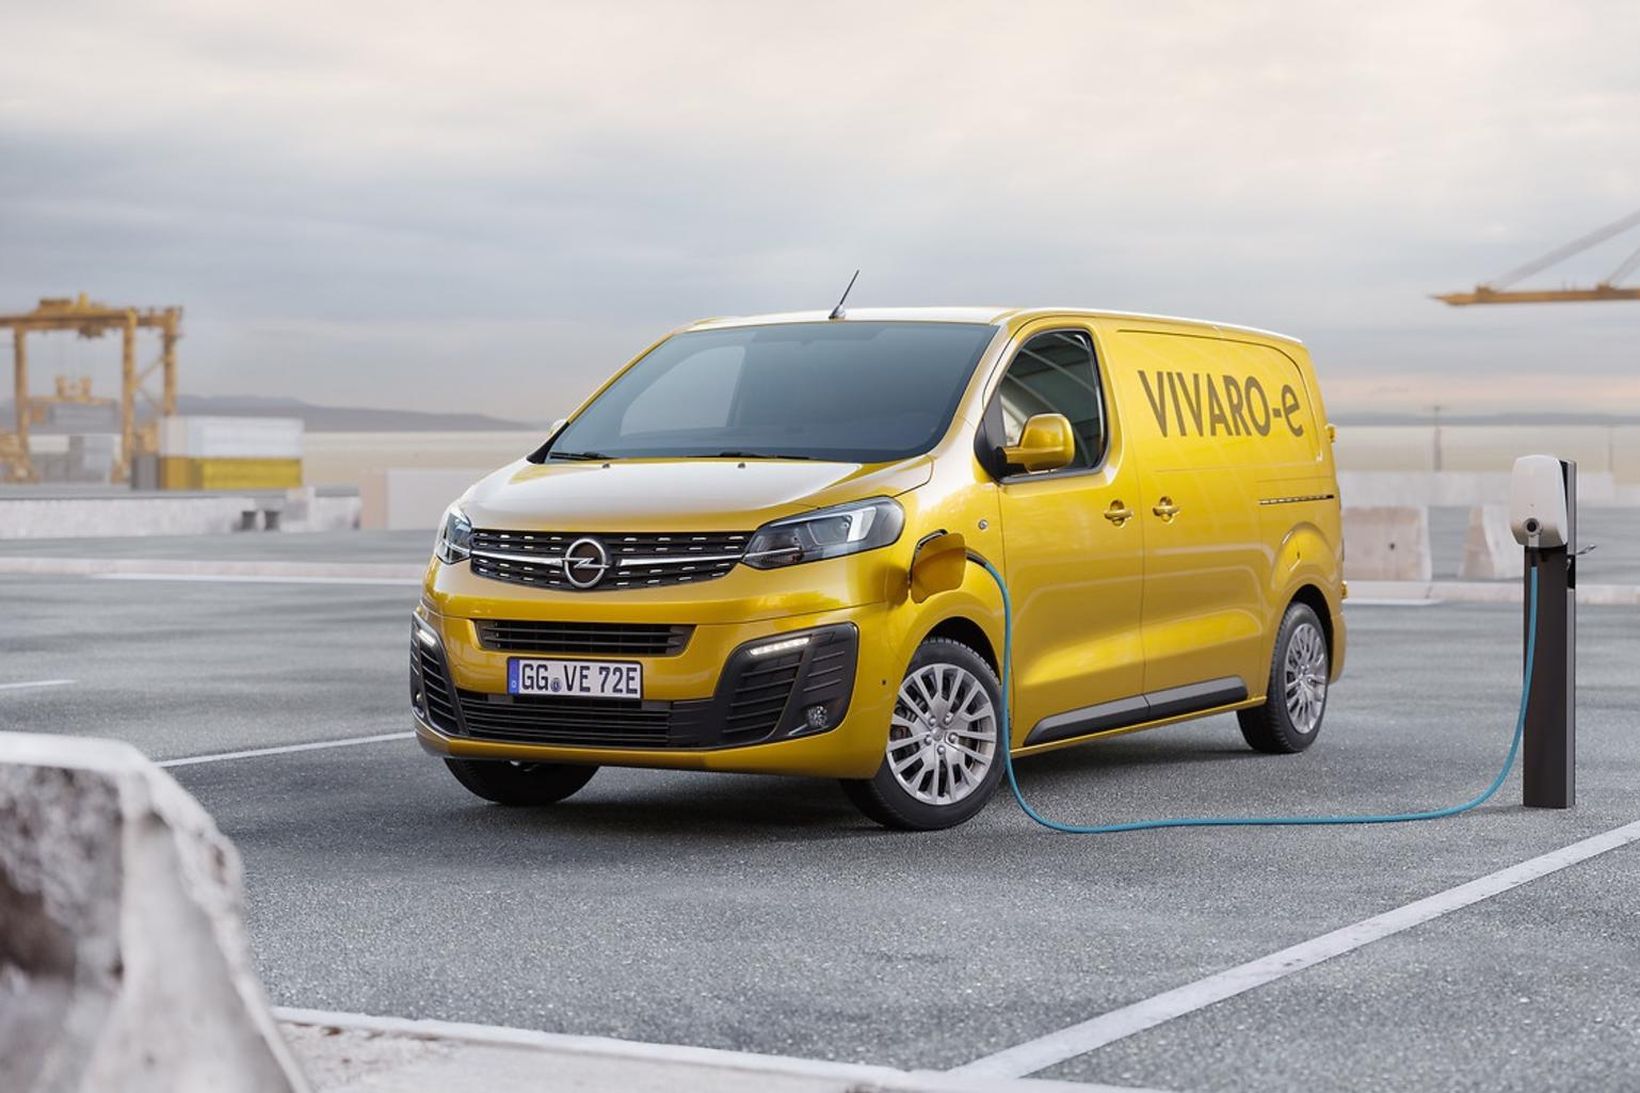 Opel Vivaro–e sendibíll ársins hjá bílaritinu WhatCar.